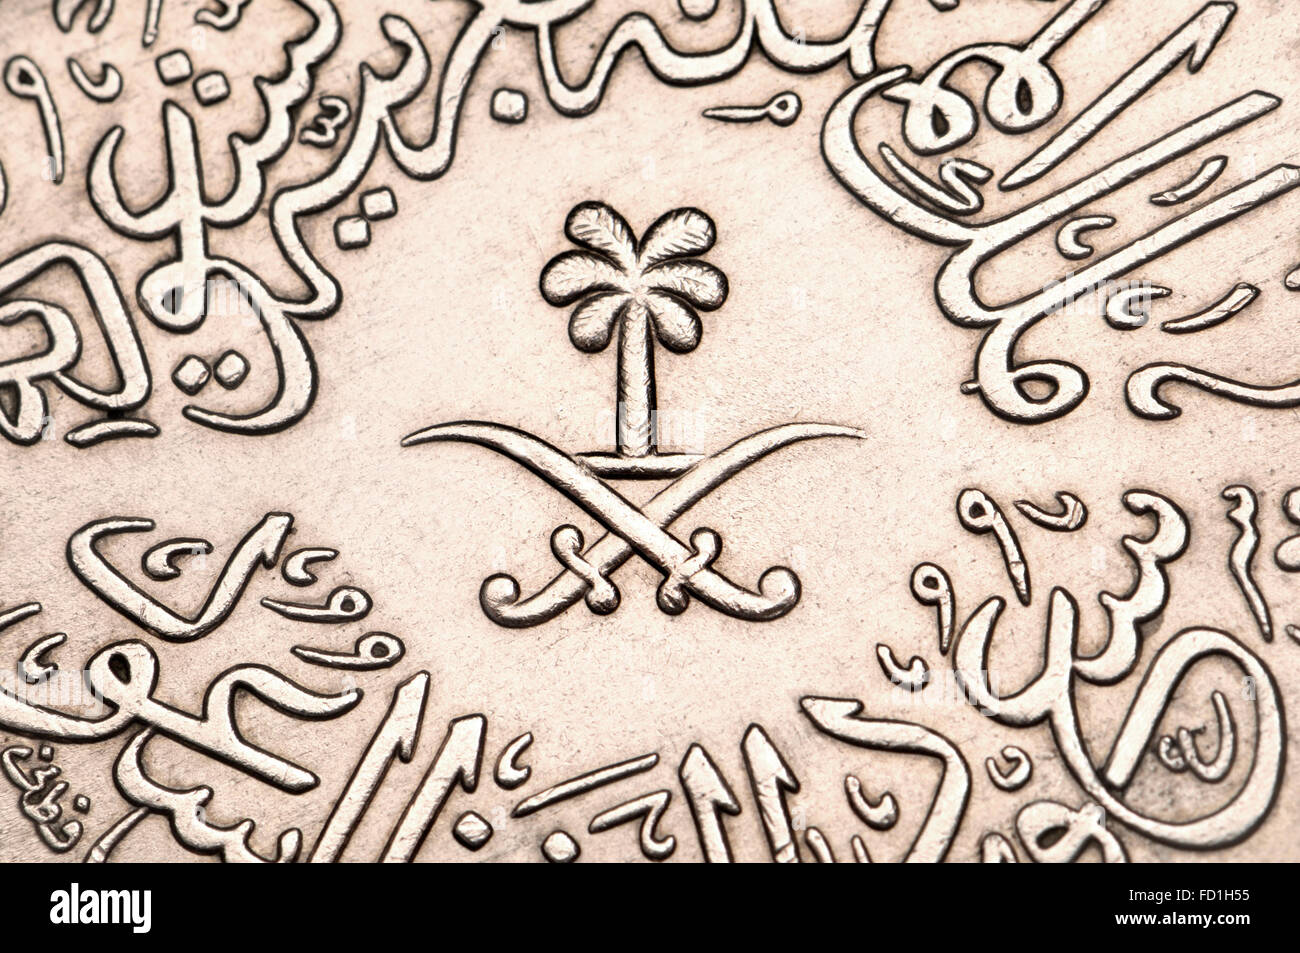 4 Ghirsh / Qirsh Münzen von Saudi-Arabien zeigt arabische Schrift und Symbole, palm-Baum und gekreuzte Schwerter (Cupro-Nickel - 1956) Stockfoto